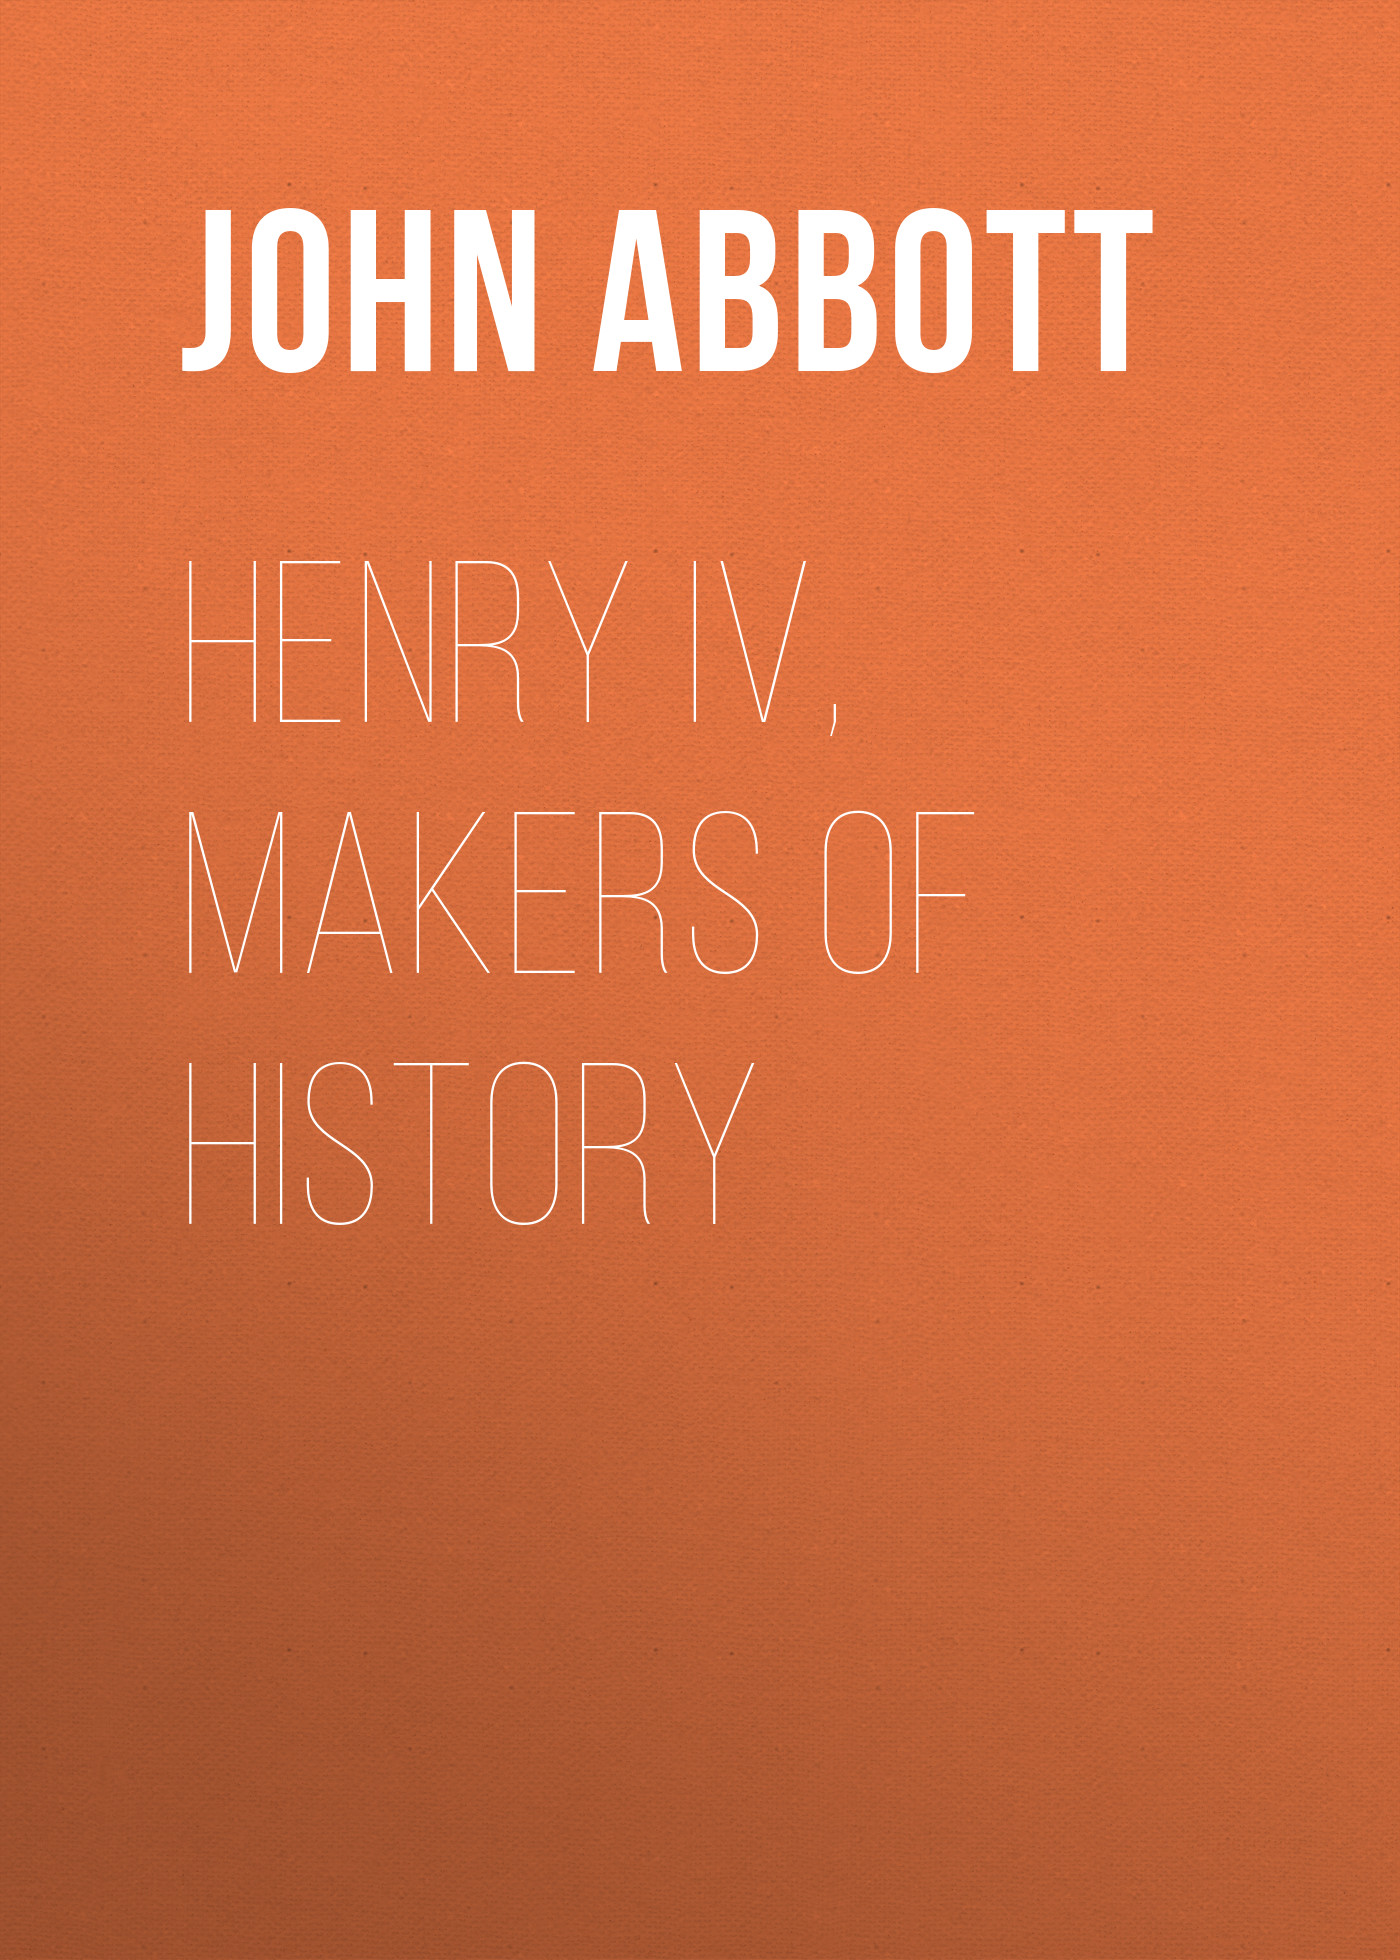 Книга Henry IV, Makers of History из серии , созданная John Abbott, может относится к жанру Зарубежная старинная литература, Зарубежная классика. Стоимость электронной книги Henry IV, Makers of History с идентификатором 24166052 составляет 5.99 руб.